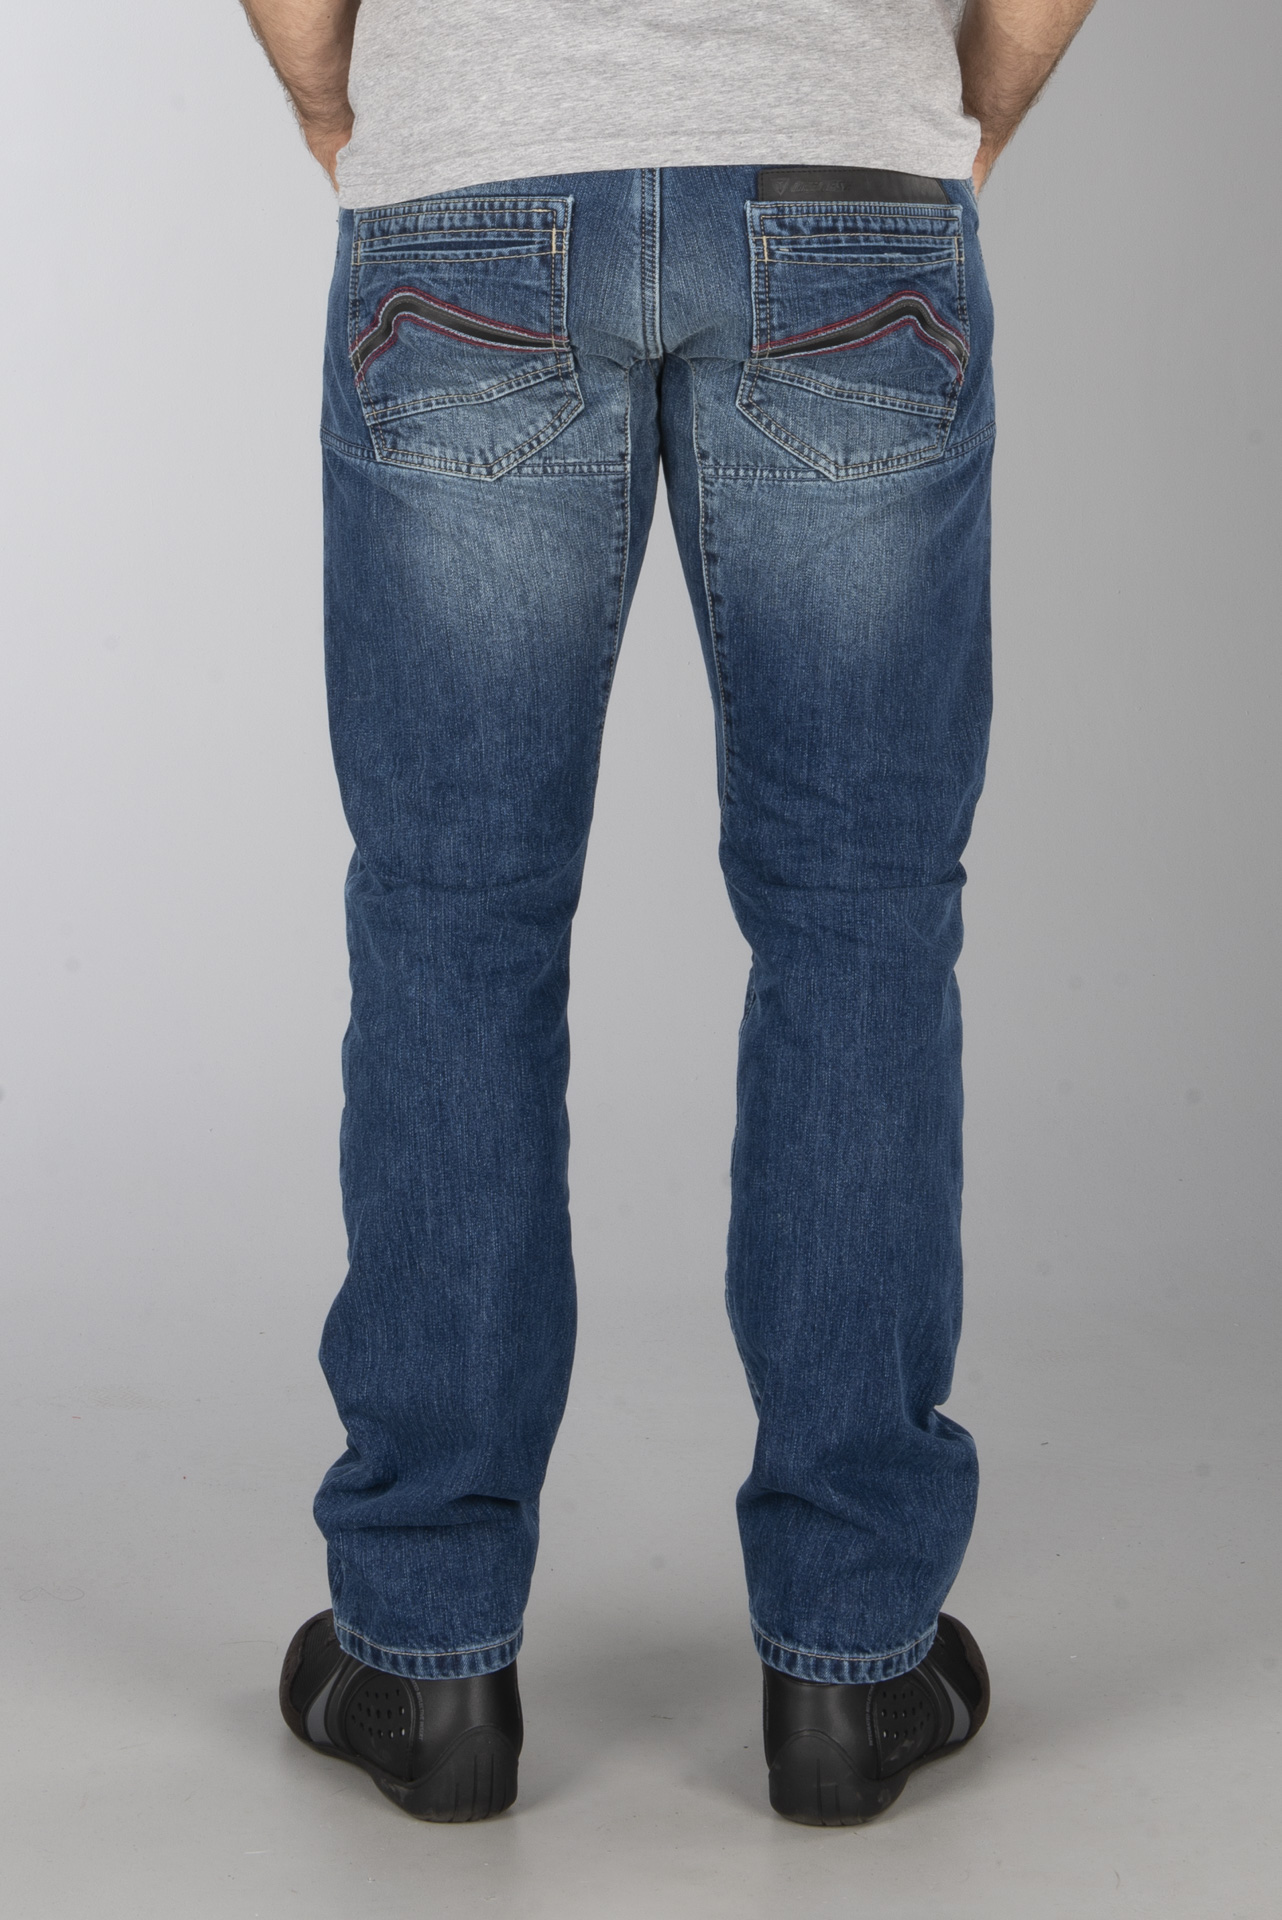 dainese bonneville jeans